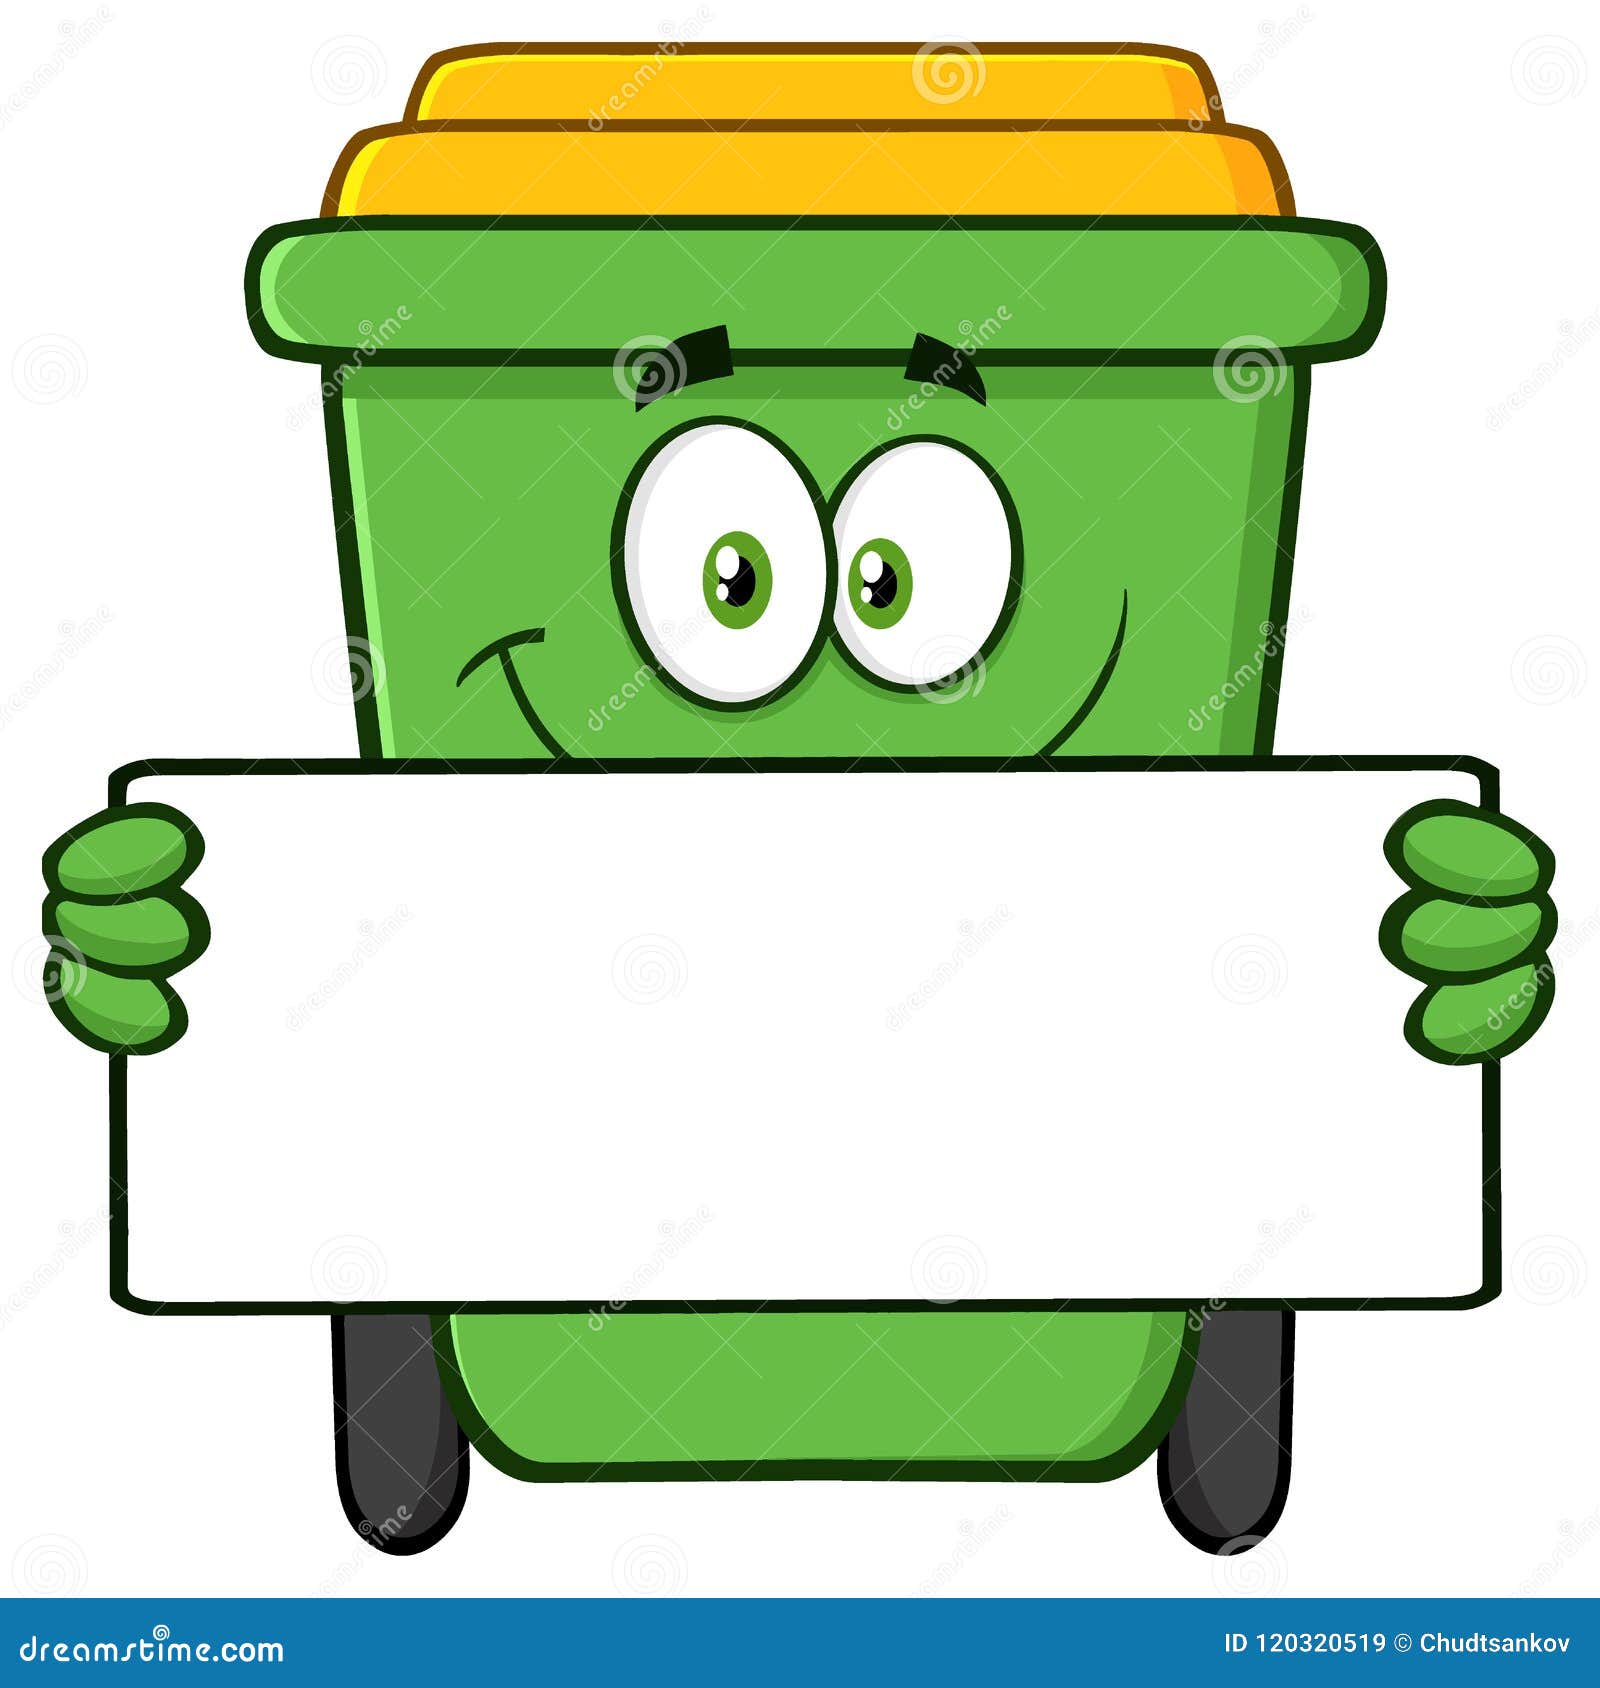 fiable cleantech 100 Liter Dustbin | Swing Lid Dustbin | Swing Lid Bin |  HDPE Garbage Bin | Outdoor Dustbin | Waste Bin | Large Size Dustbin - Blue  - Green Plastic